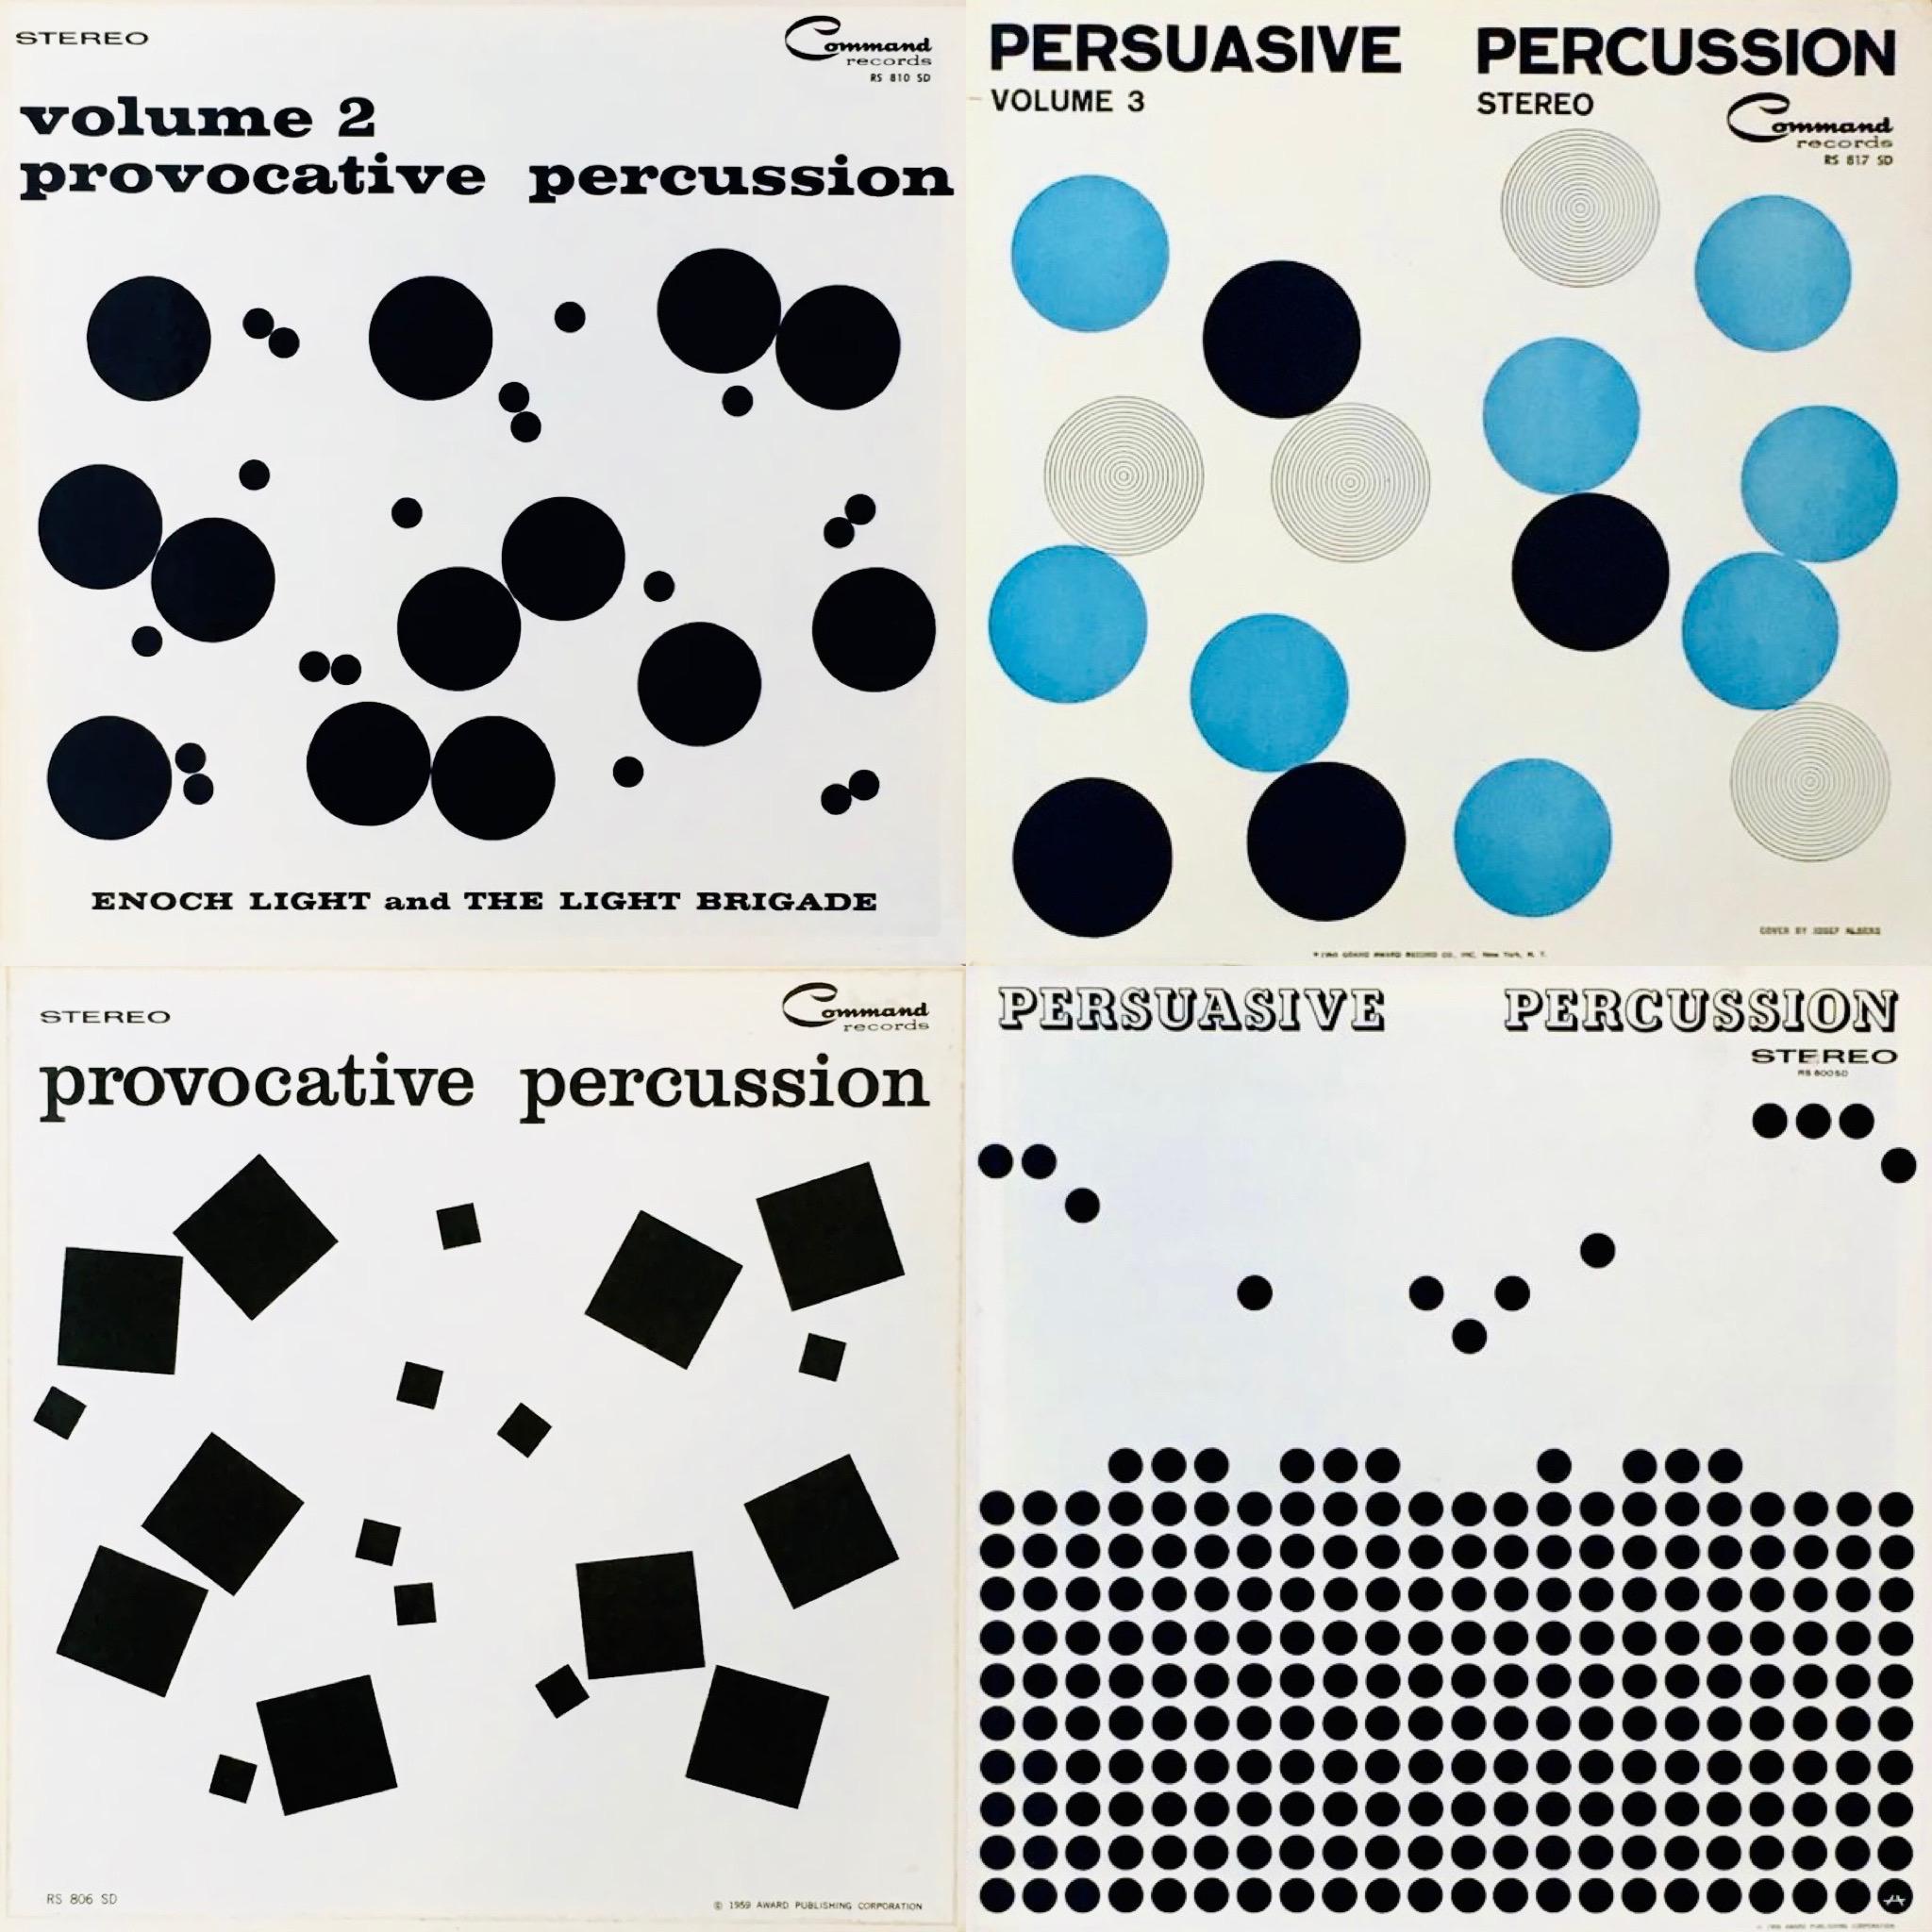 Josef Albers Album Art ca. Ende der 1950er Jahre:
Ein Satz von 4 Vinyl-Schallplattenhüllen (die ihre Schallplatten enthalten), die von Josef Albers zwischen 1958 und 1960 entworfen wurden. Als Gruppe gerahmt sieht es fantastisch aus.

Medium: